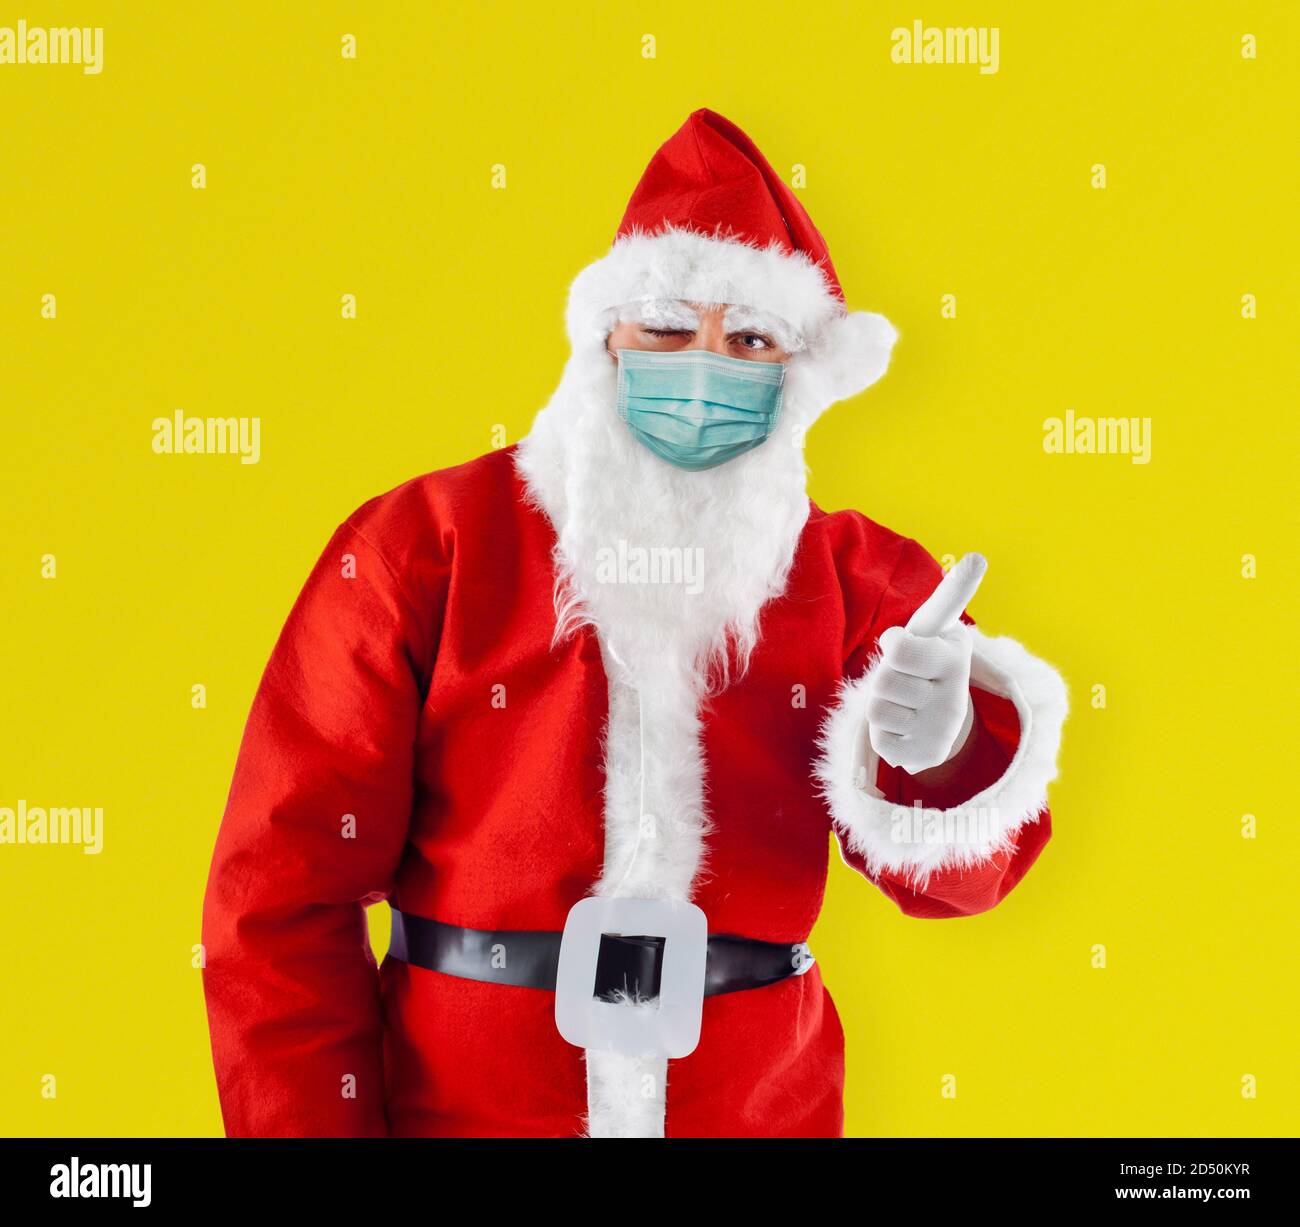 Le Père Noël le Père Noël avec masque chirurgical montre le pouce vers le haut montre le pouce vers le haut sur fond jaune. Banque D'Images